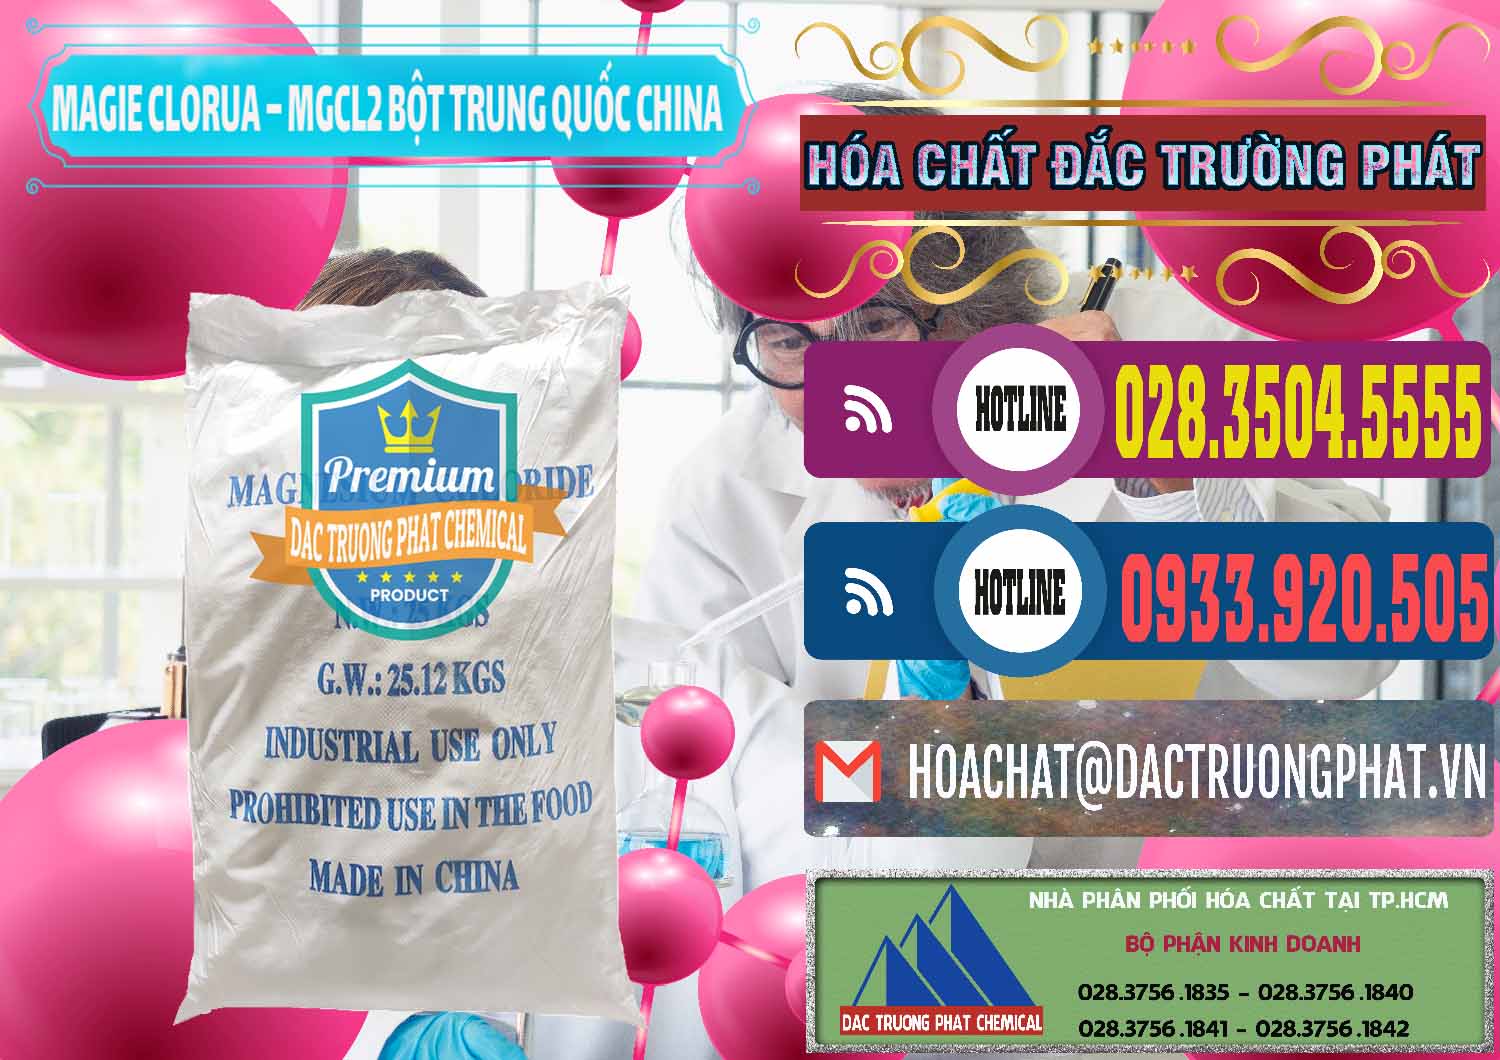 Nơi cung ứng và bán Magie Clorua – MGCL2 96% Dạng Bột Bao Chữ Xanh Trung Quốc China - 0207 - Chuyên cung cấp - phân phối hóa chất tại TP.HCM - muabanhoachat.com.vn